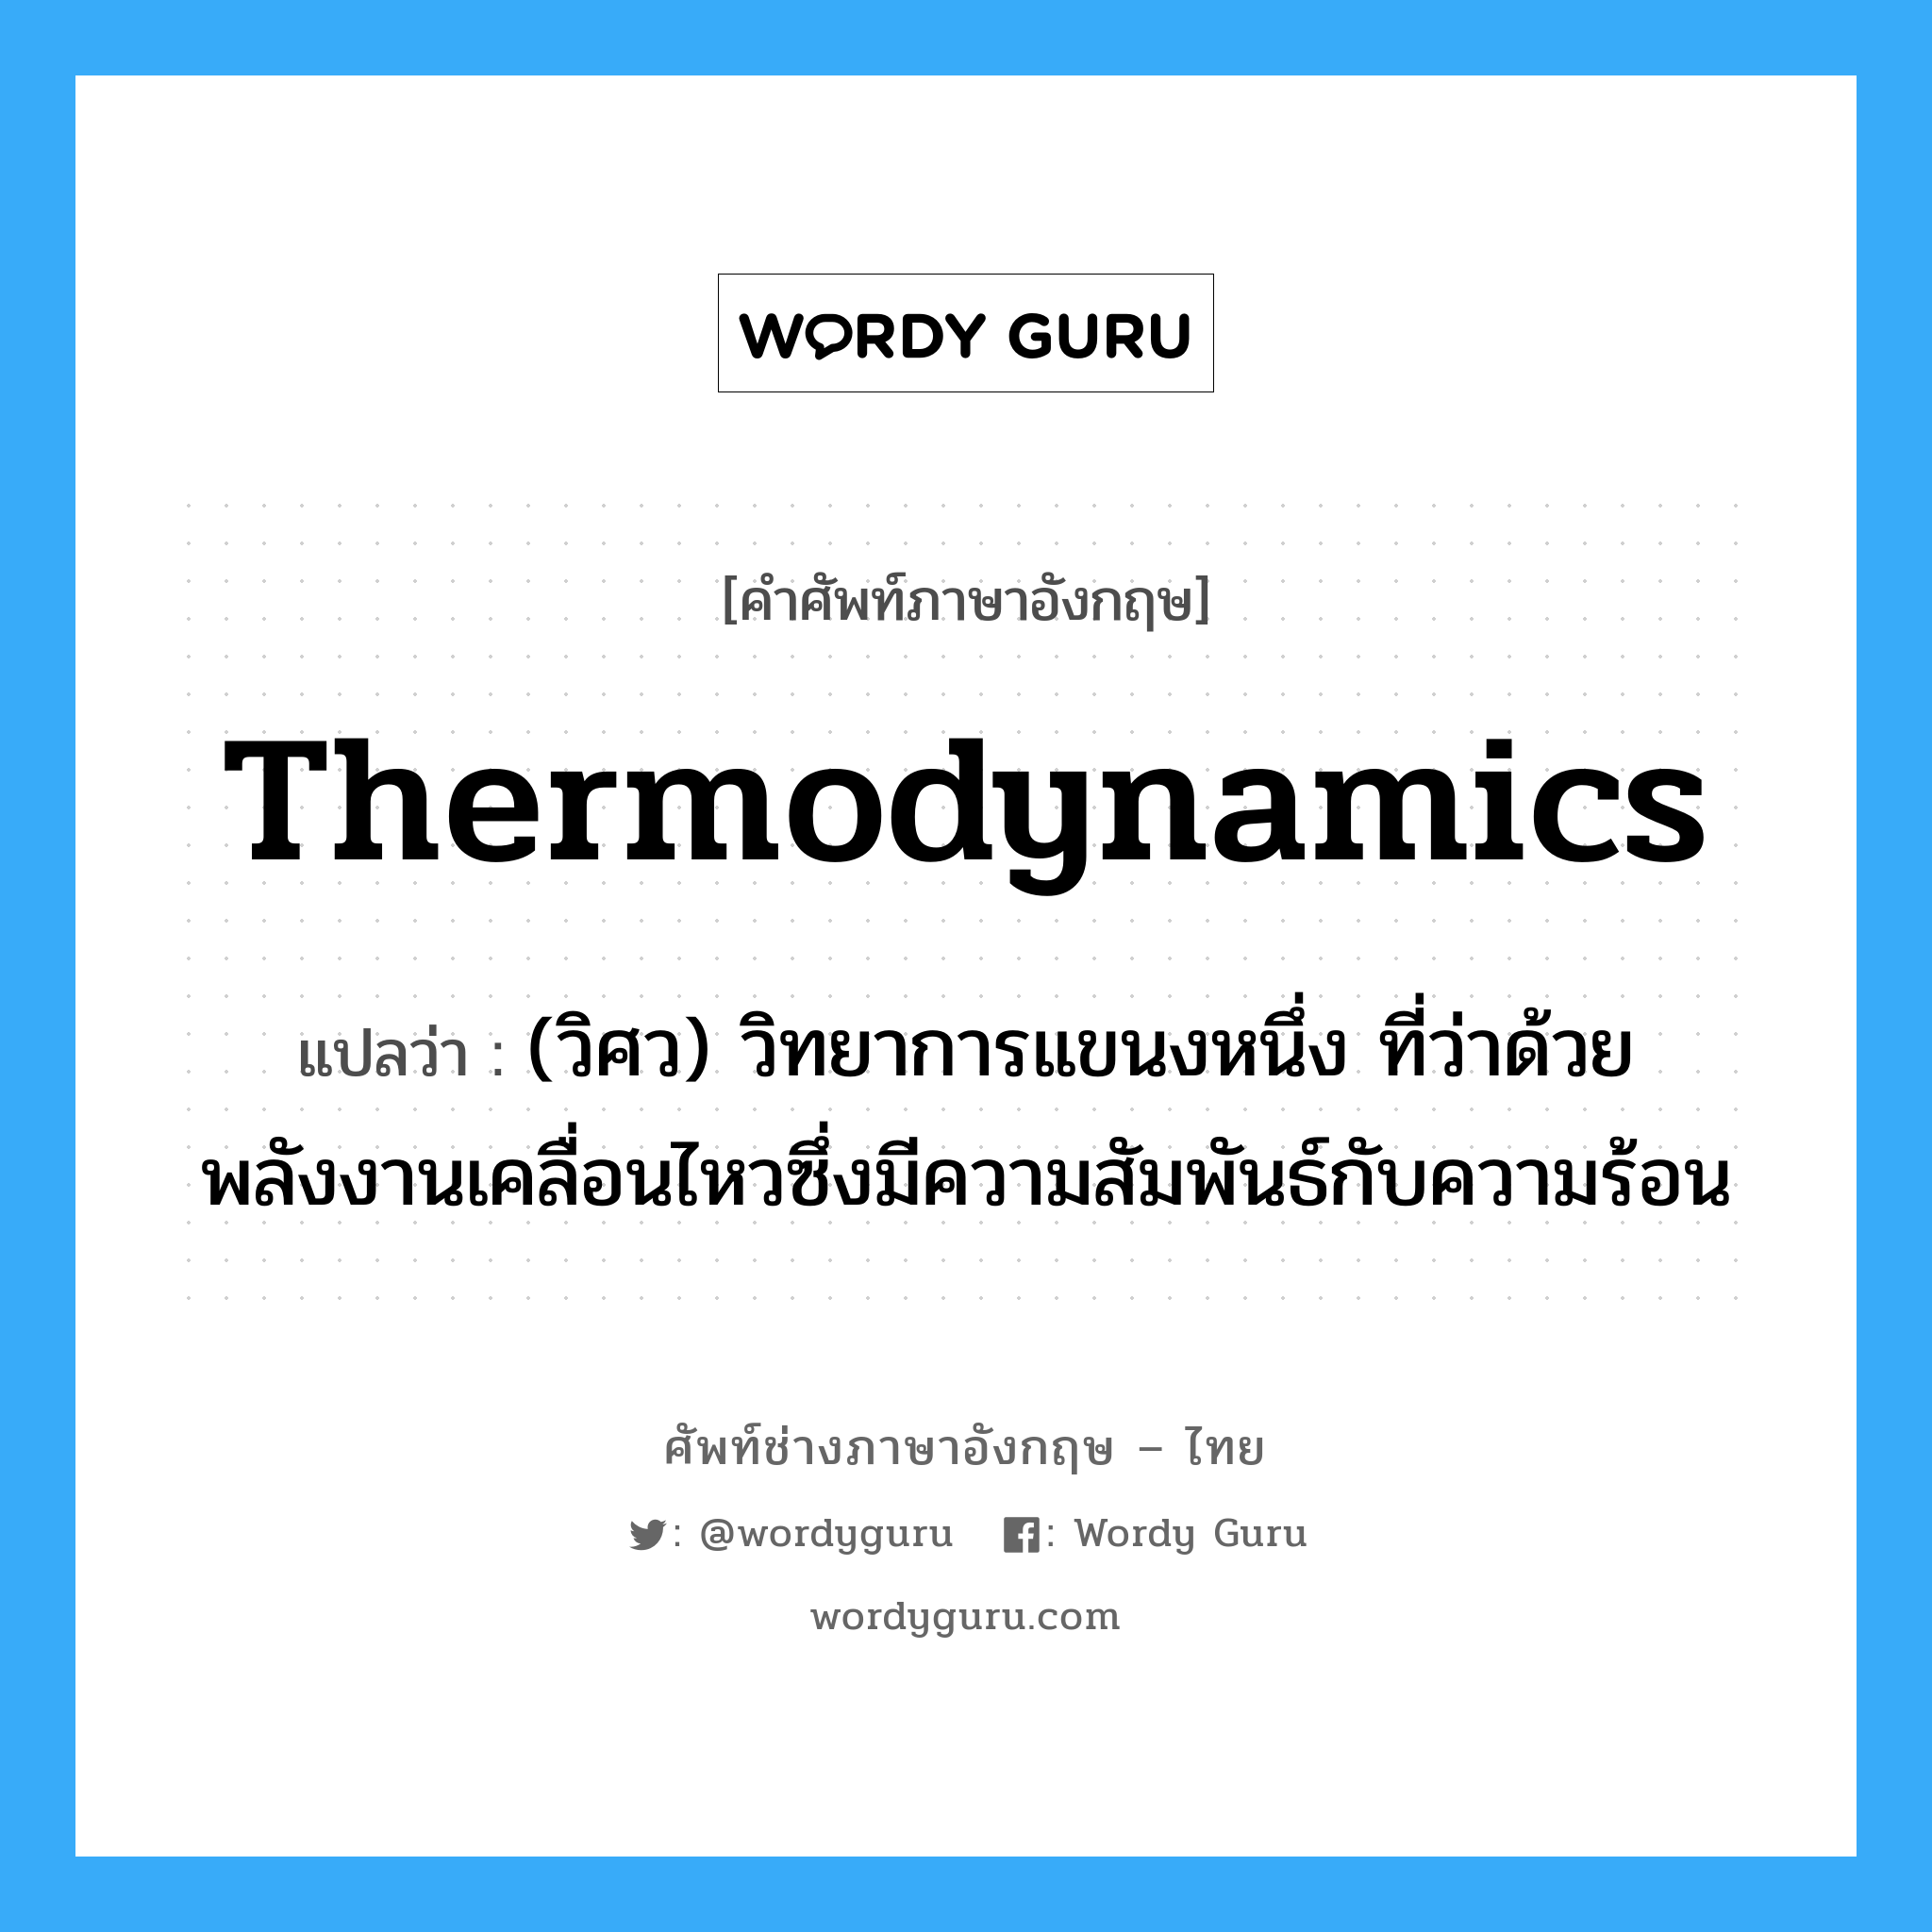 thermodynamics แปลว่า?, คำศัพท์ช่างภาษาอังกฤษ - ไทย thermodynamics คำศัพท์ภาษาอังกฤษ thermodynamics แปลว่า (วิศว) วิทยาการแขนงหนึ่ง ที่ว่าด้วยพลังงานเคลื่อนไหวซึ่งมีความสัมพันธ์กับความร้อน